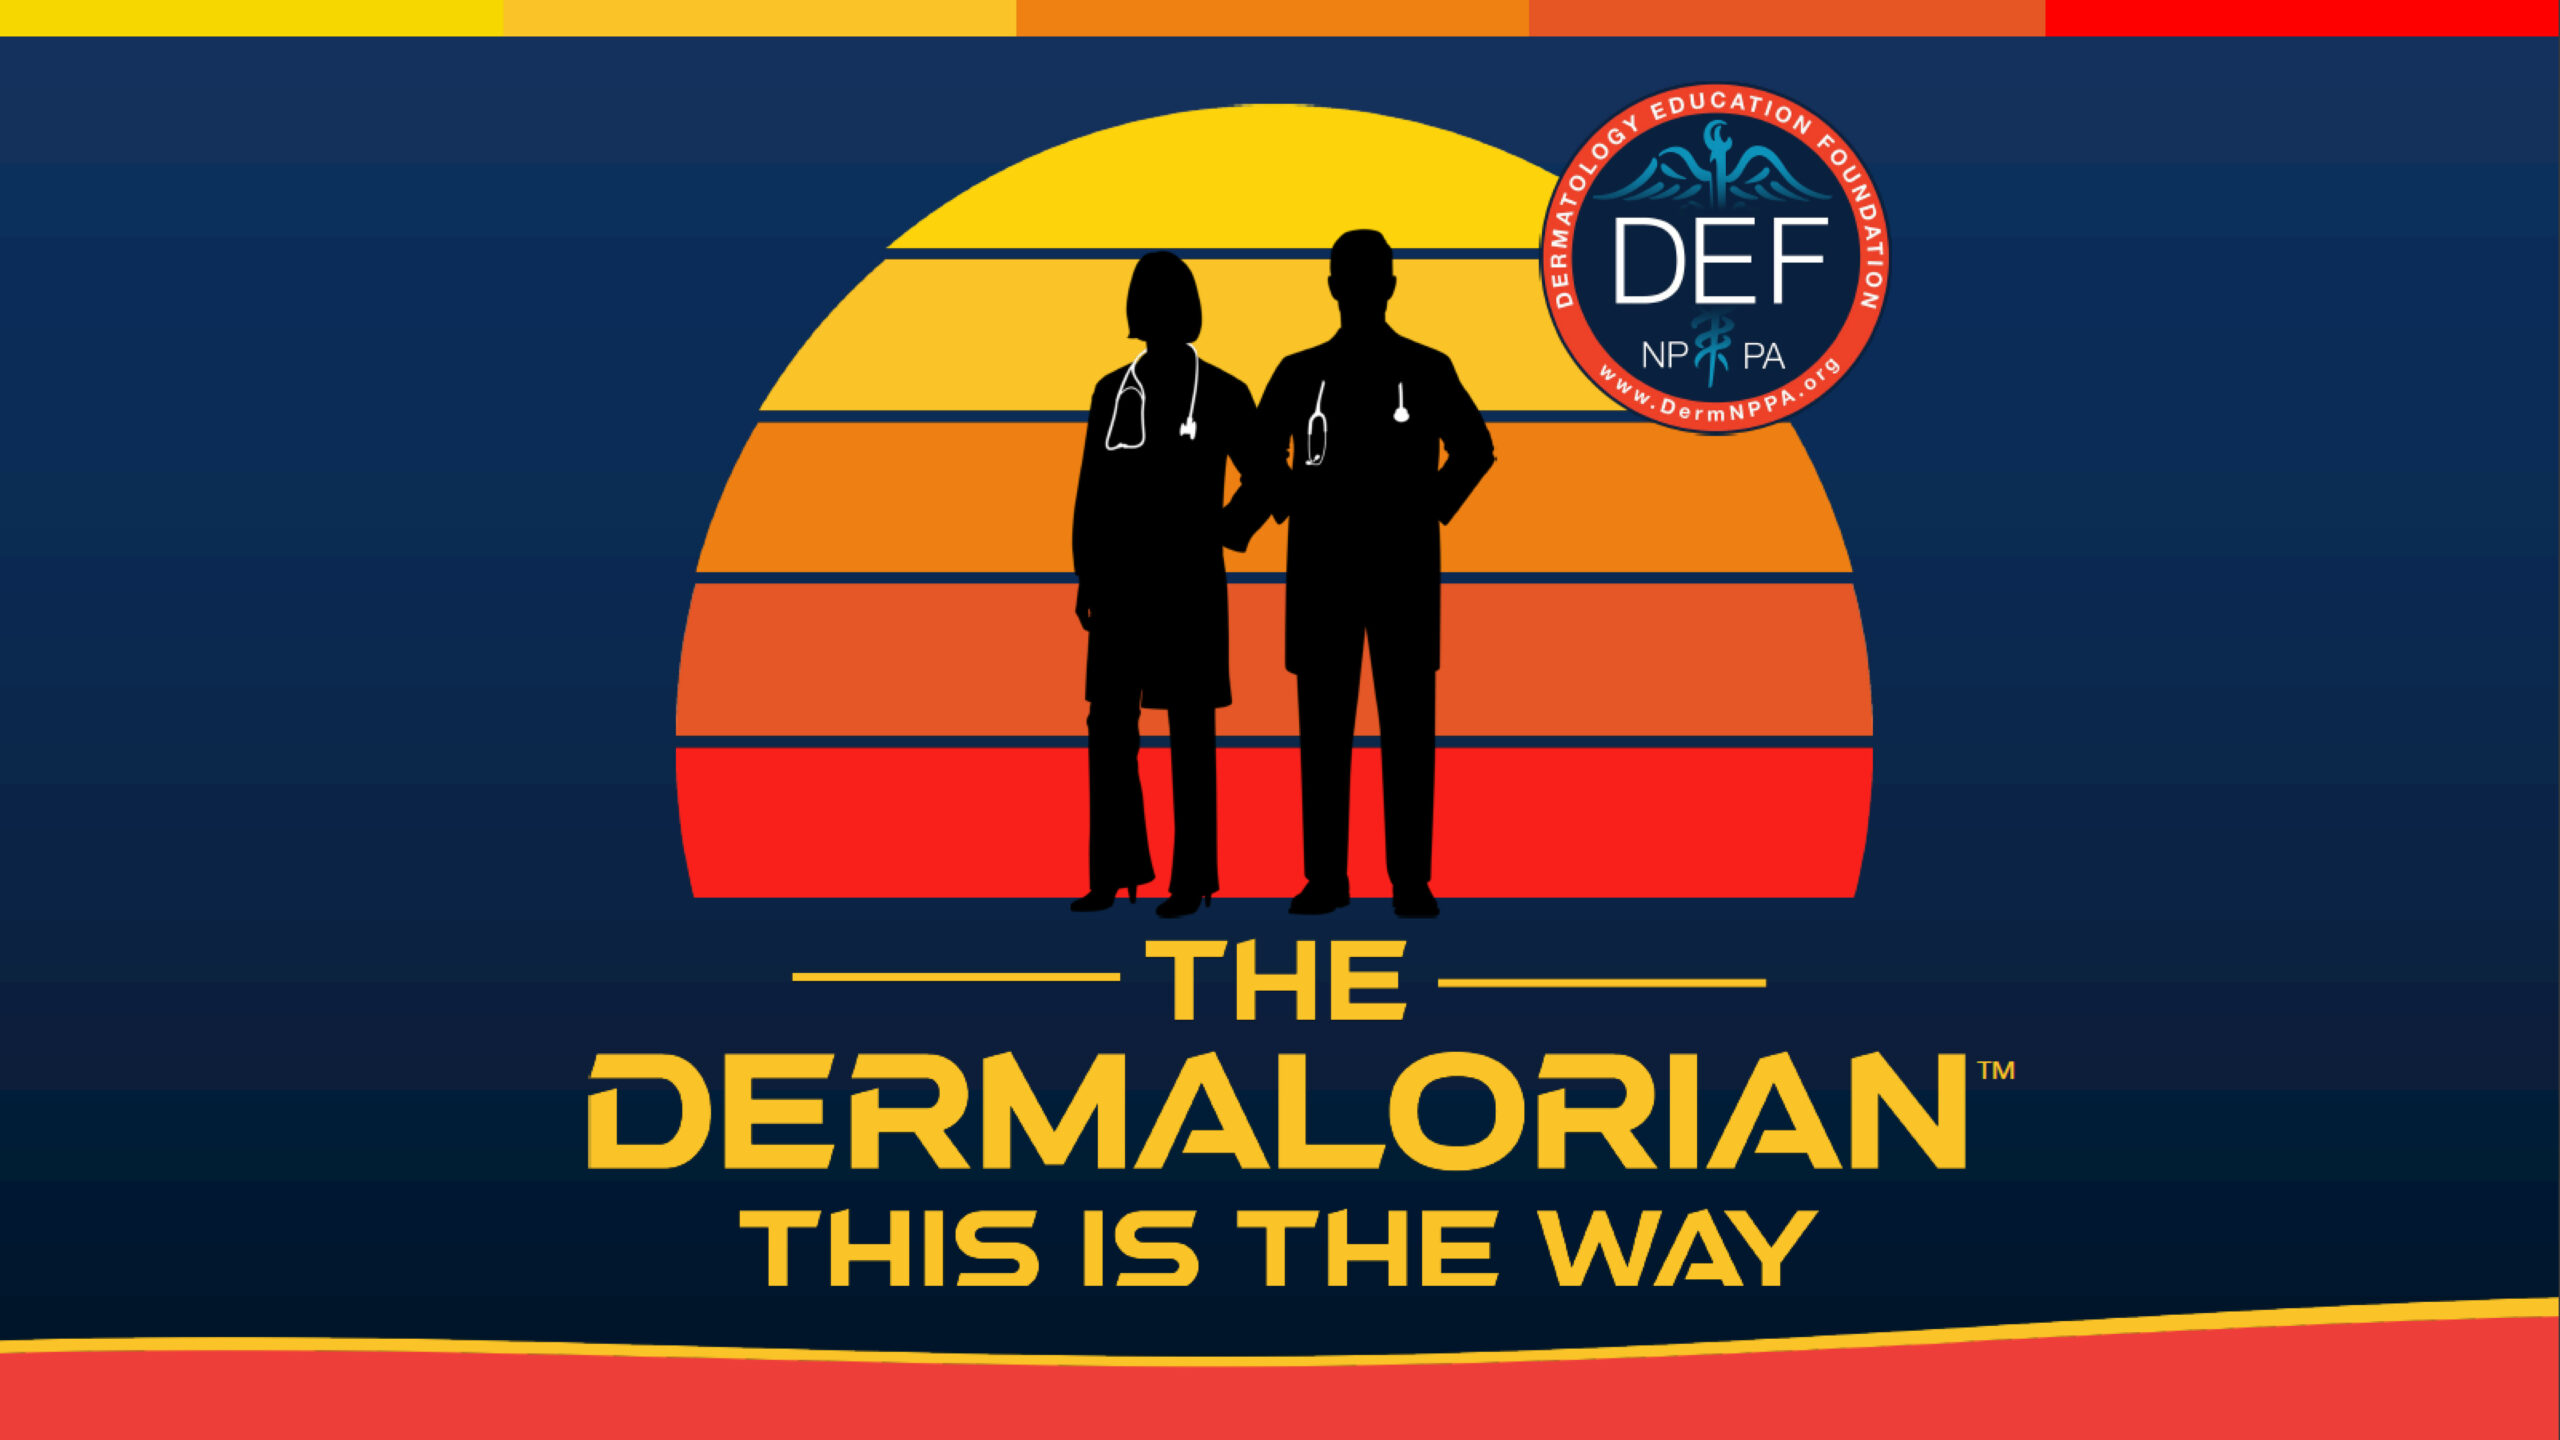 Dermalorian logo depicting 2 HCPs in sillhouette